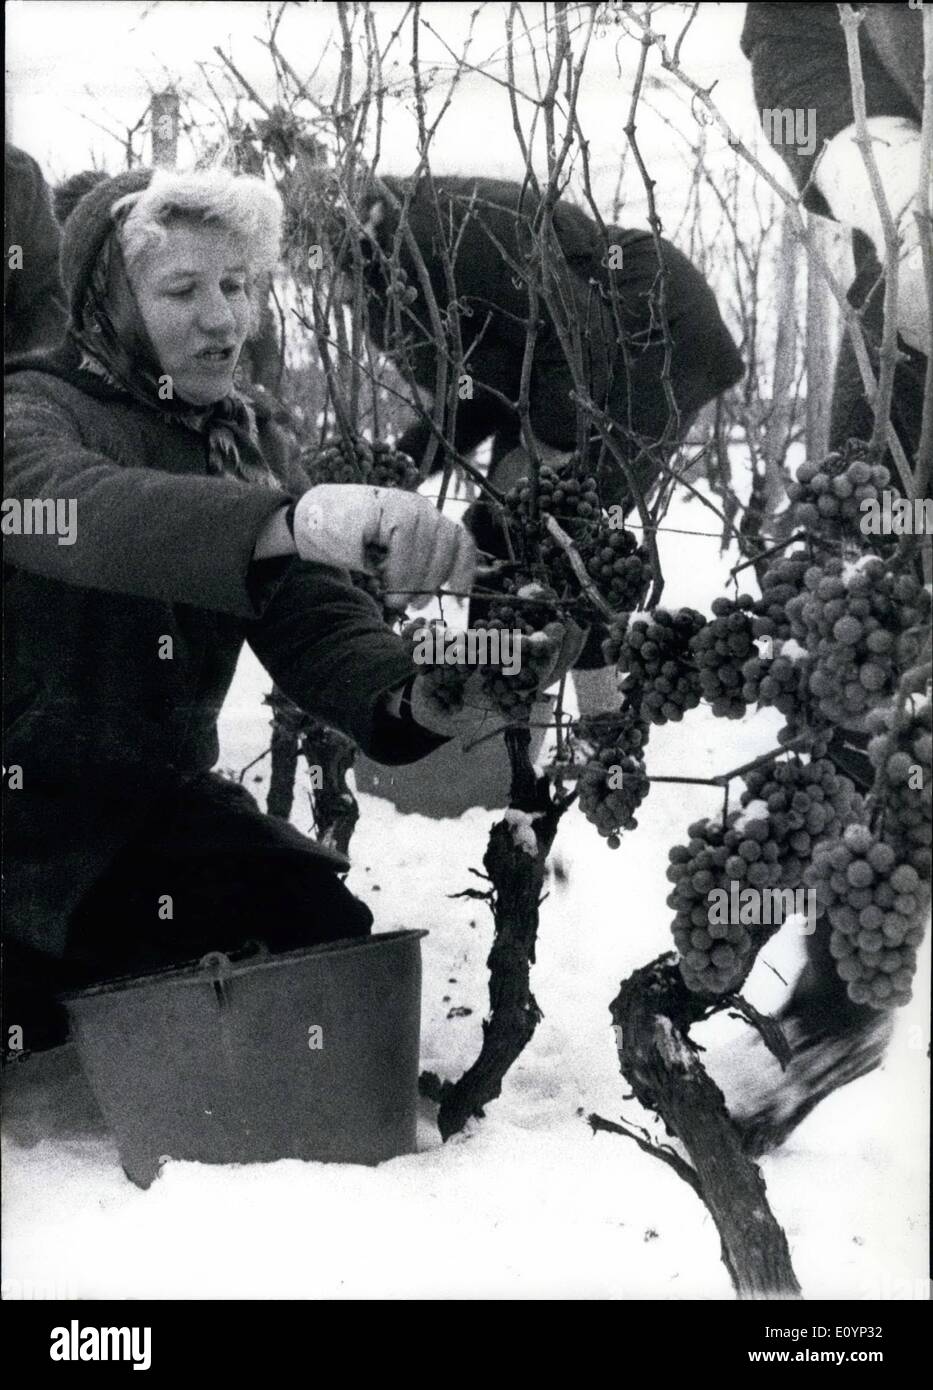 01 janvier 1971 - Pour la première fois trois wineries : réunis dans de plus grandes quantités de ''ice-wine'' à basse température et de la neige. C'était utile de laisser pendre les raisins et de faire tout ce travail pour les ramasser (photo) pour les sortes de vin de glace étaient de haute qualité et sont considérés comme des meilleures de tous les districts de la viticulture allemande. En dépit du froid et de la neige le rassemblement dans des raisins congelés était assez amusant en raison de l'offre de petites saucisses et d'un poinçon. Banque D'Images